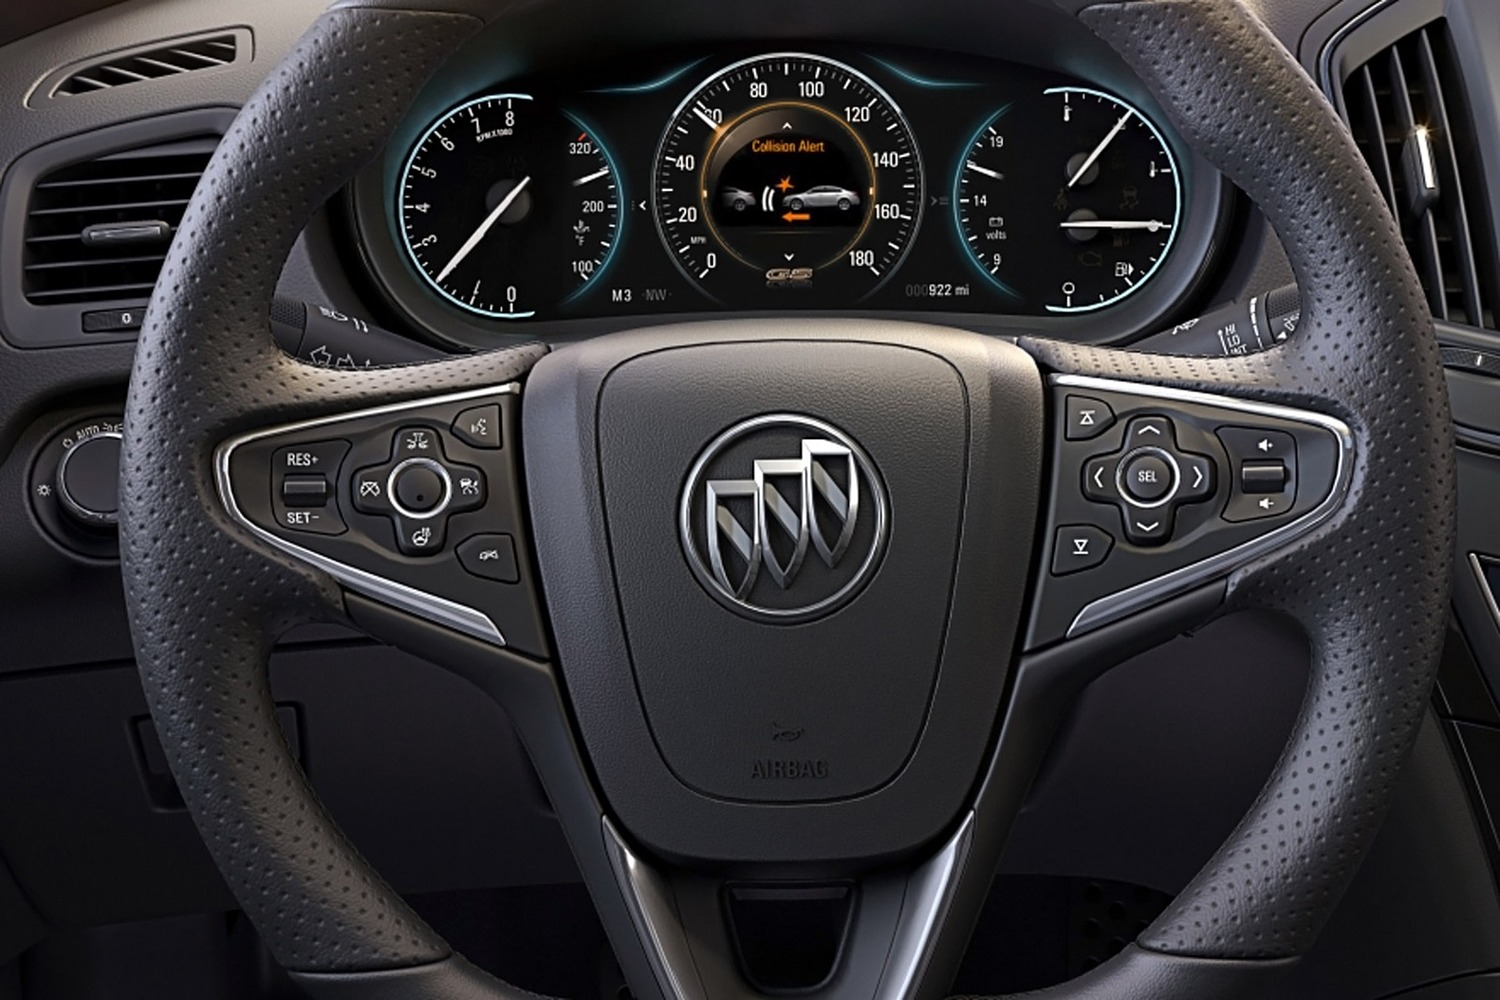 Buick Regal GS Sedan Steering Wheel Detail (2014 model year shown)